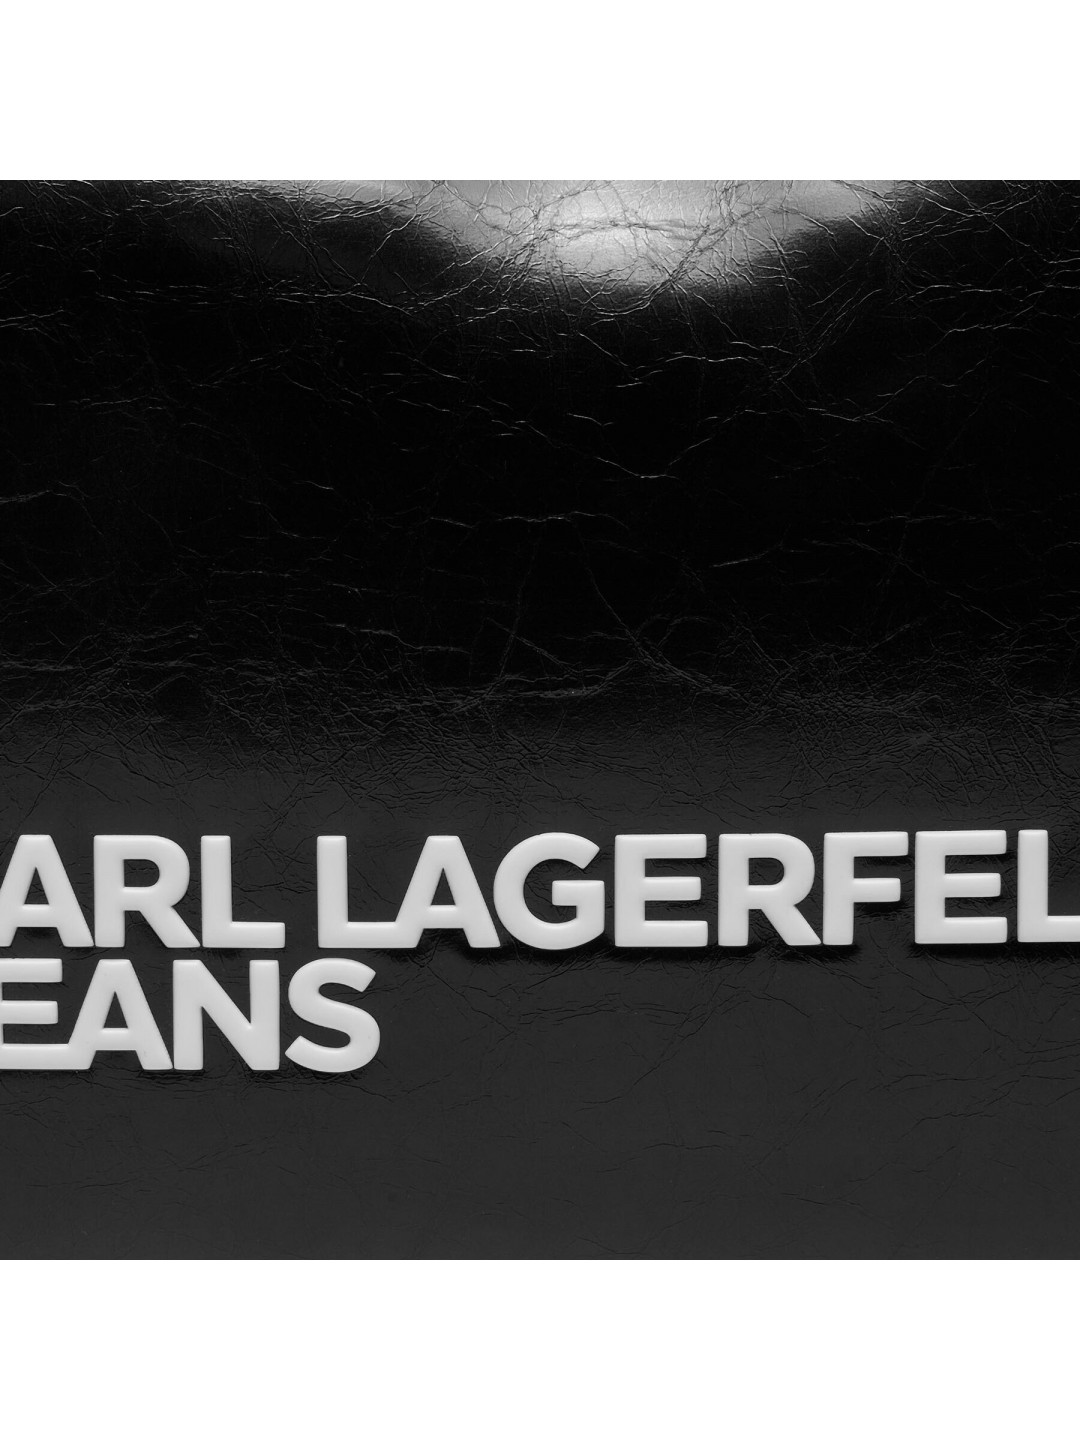 Kabelka Karl Lagerfeld Jeans